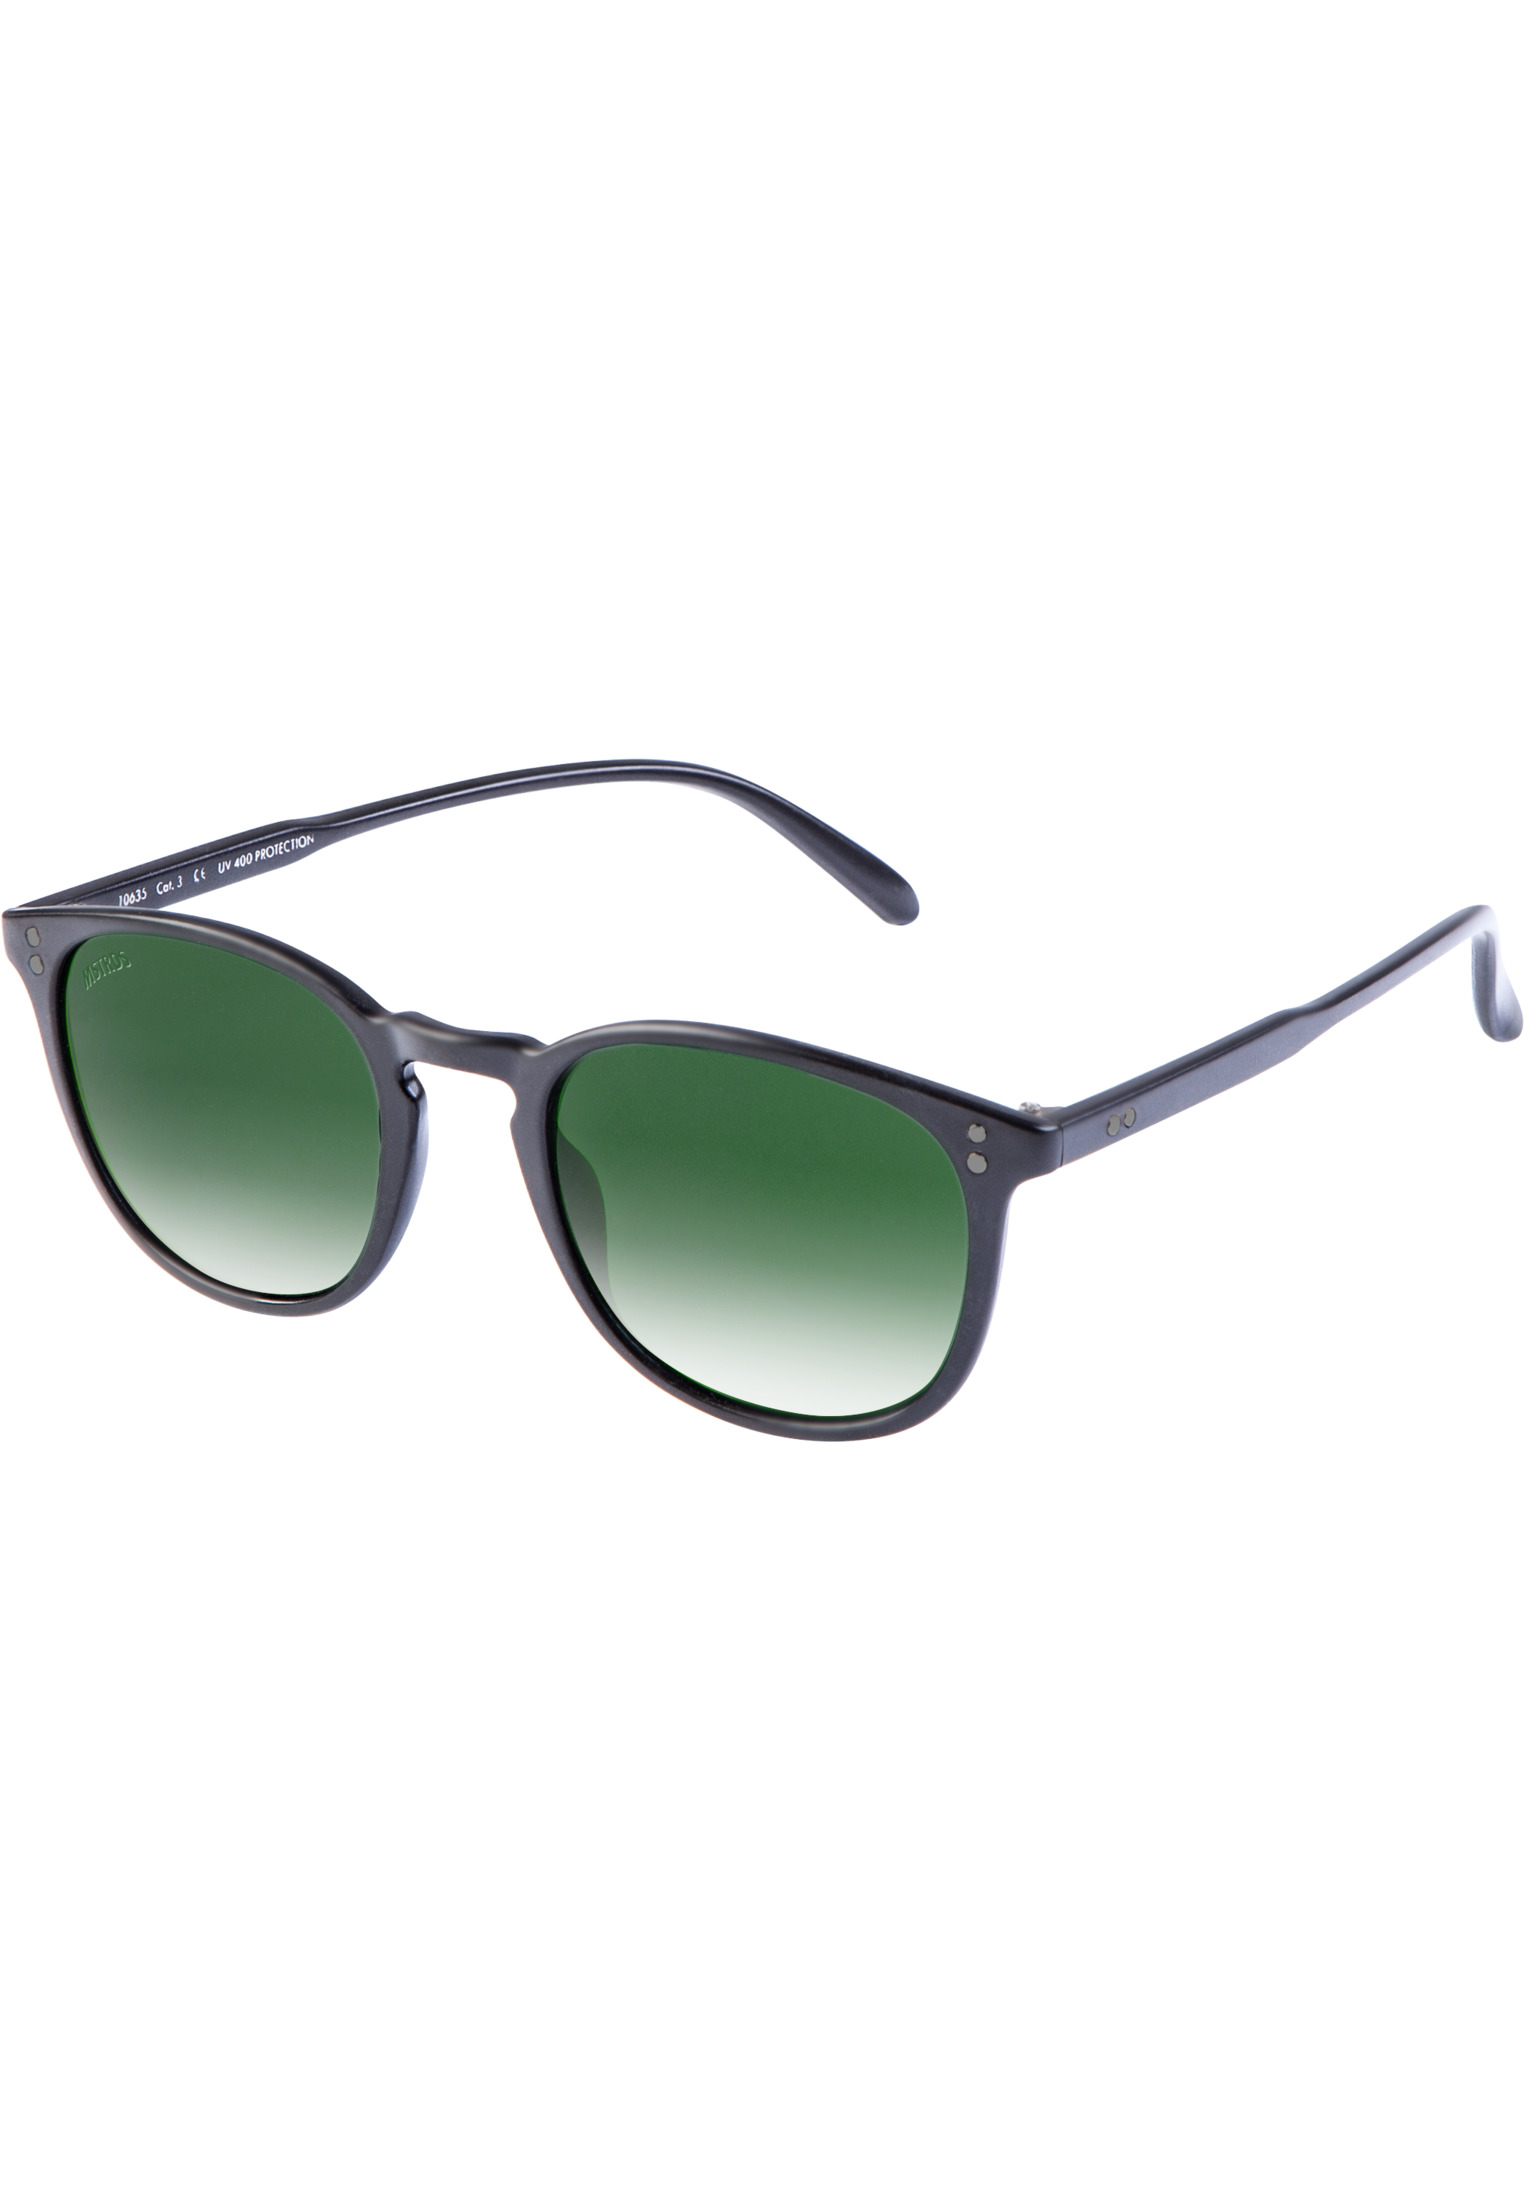 Brillen Sunglasses Arthur Youth in Farbe blk/grn